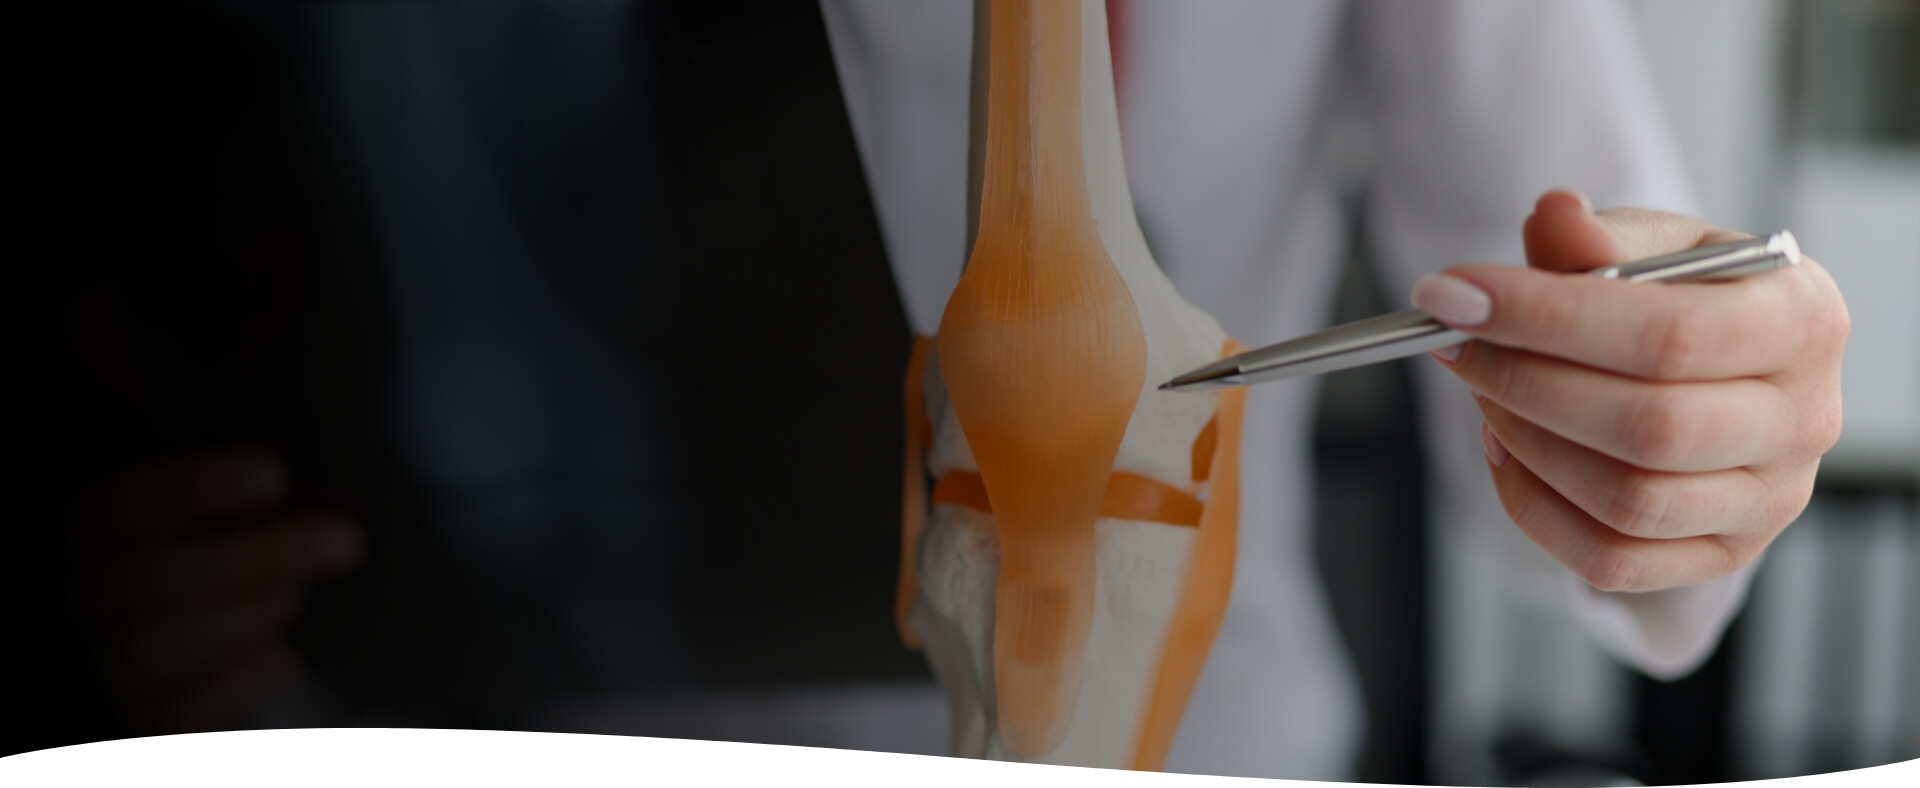 Un Dispositif Médical dédié au soulagement de la douleur de la gonarthrose (arthrose du genou)